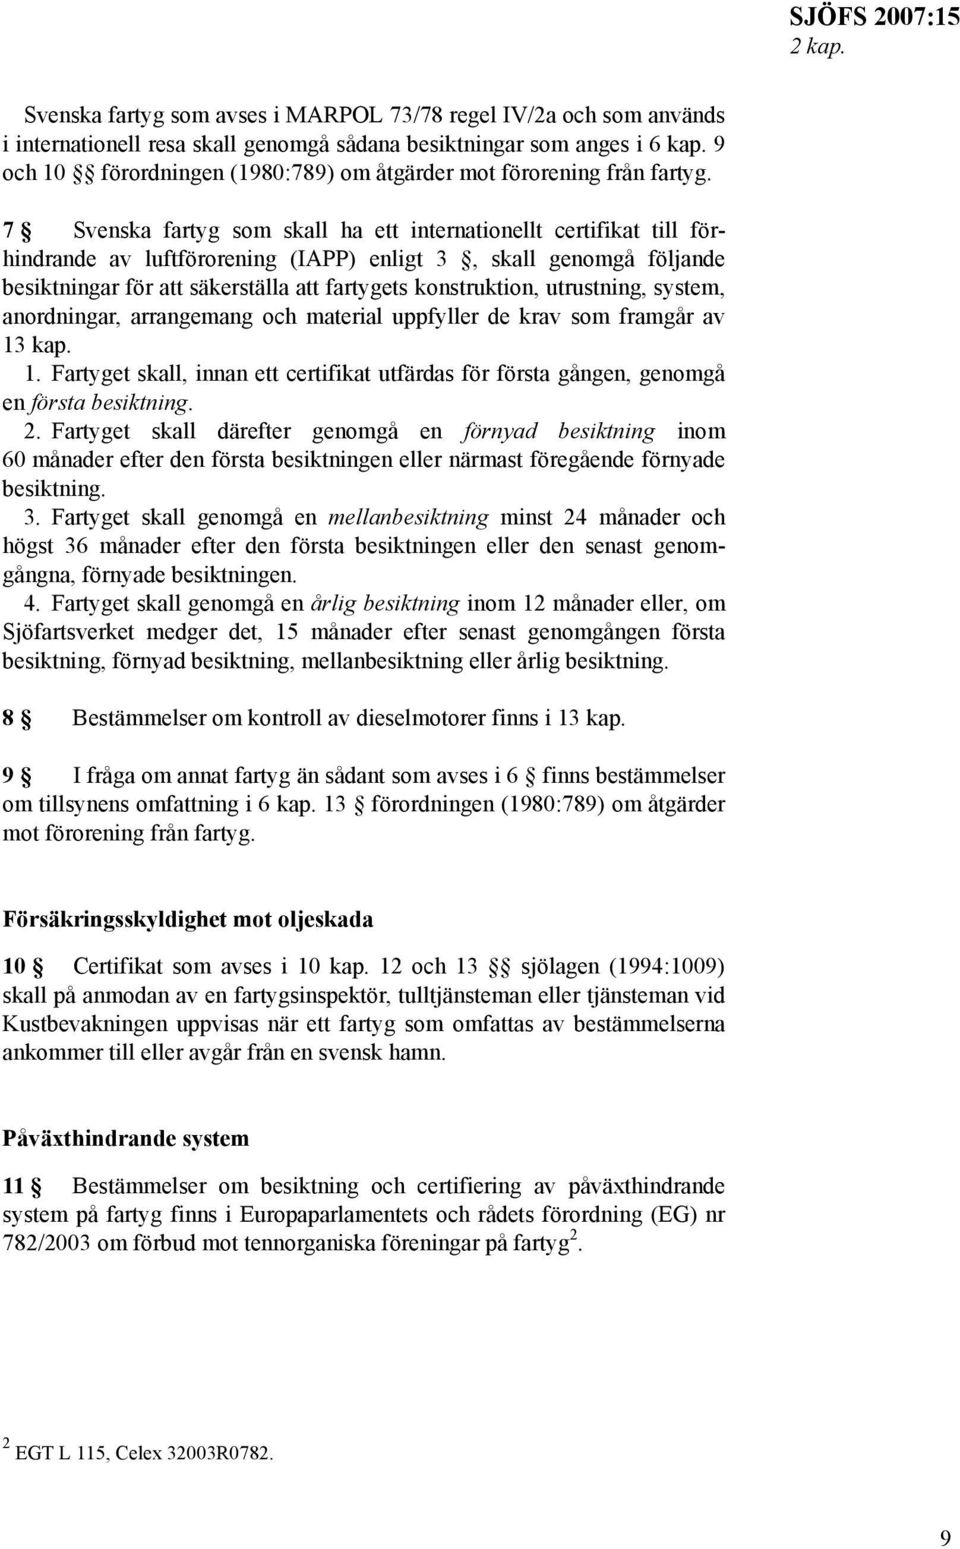 7 Svenska fartyg som skall ha ett internationellt certifikat till förhindrande av luftförorening (IAPP) enligt 3, skall genomgå följande besiktningar för att säkerställa att fartygets konstruktion,